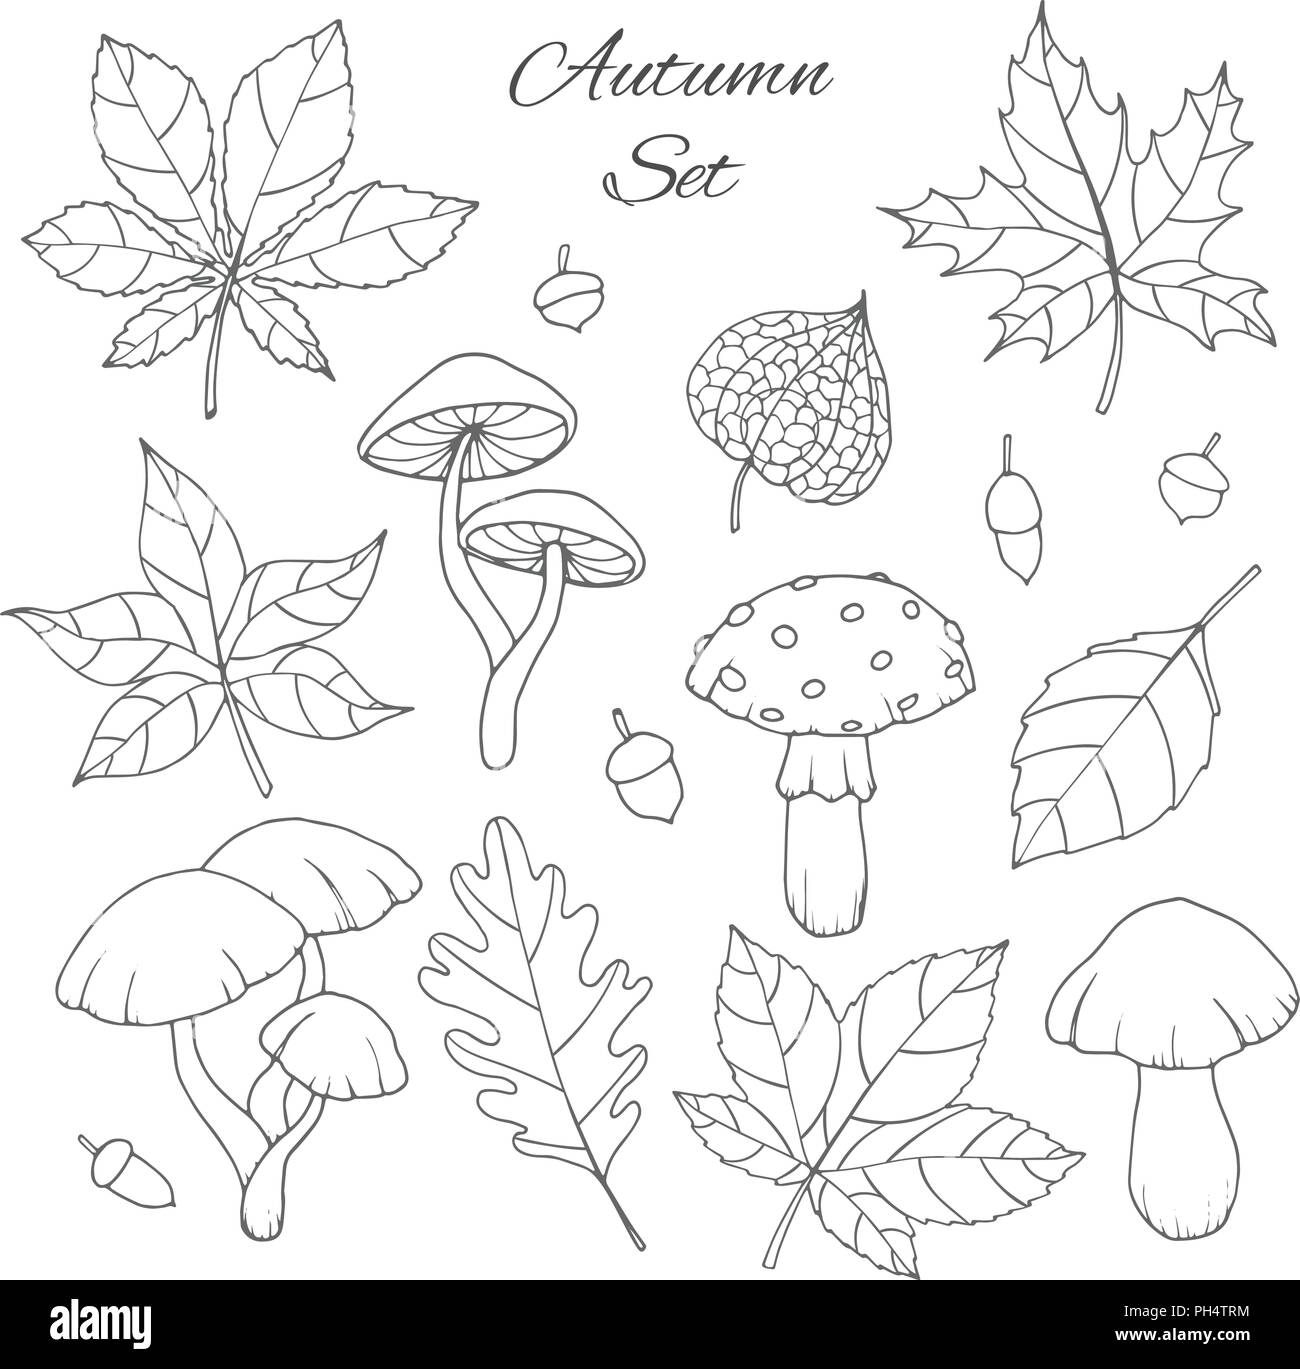 Hand drawn vector set d'automne avec le chêne, peuplier, hêtre, érable, de trembles et de feuilles de marronnier, des champignons, des glands et physalis contours isolé sur le w Illustration de Vecteur